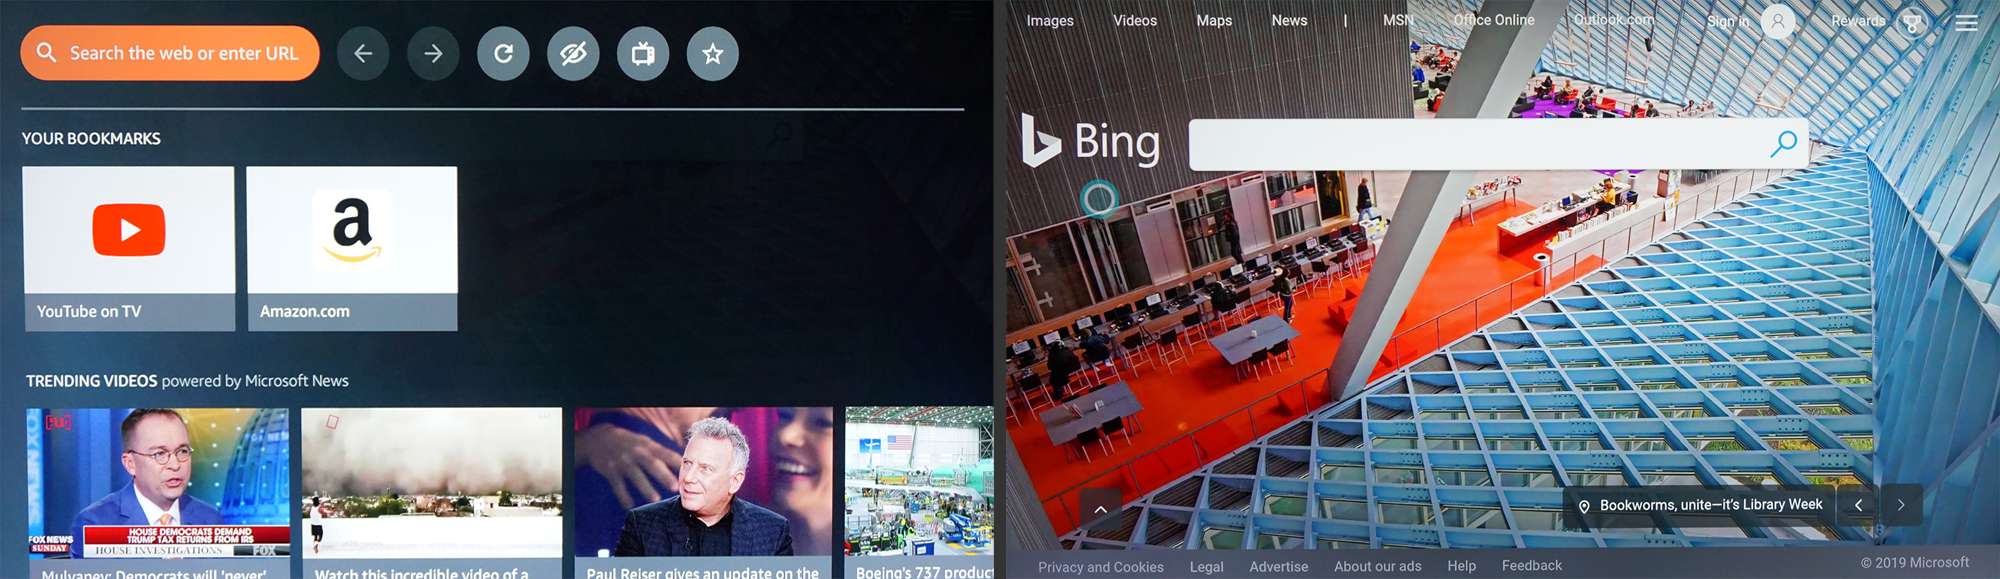 Fire TV - Silk webbläsare med Bing-sökning